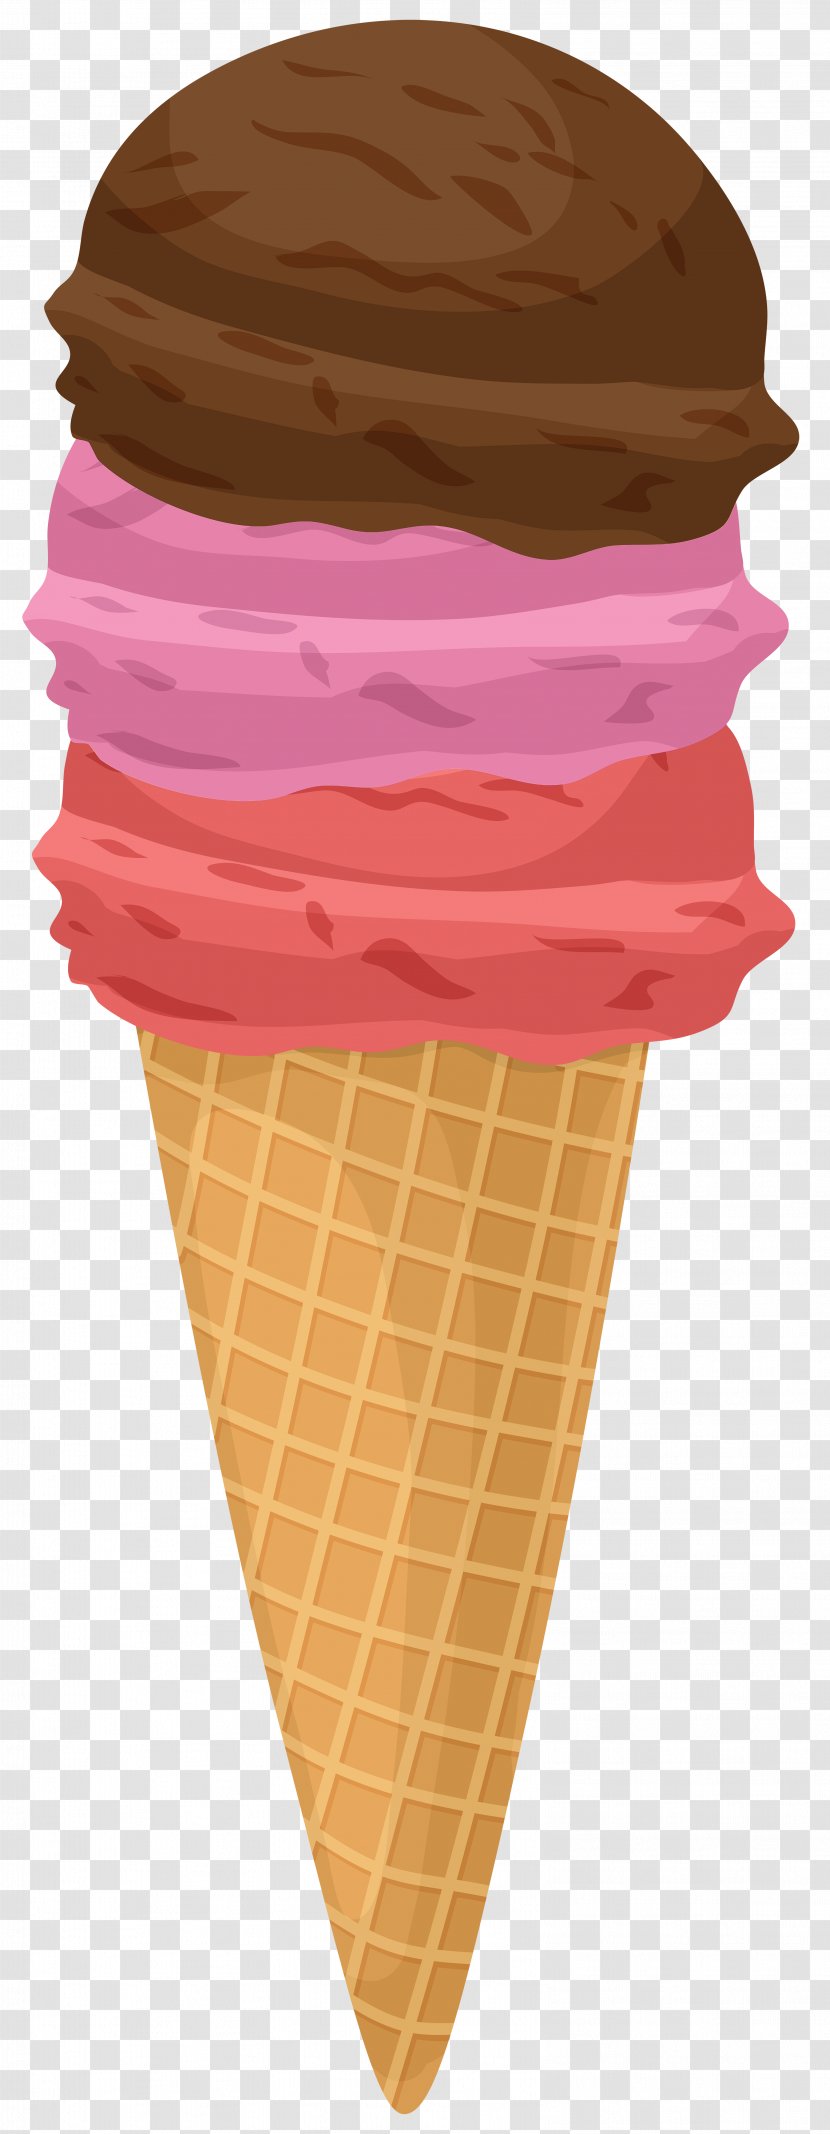 Ice Cream Cones Strawberry Neapolitan - Dessert Transparent PNG